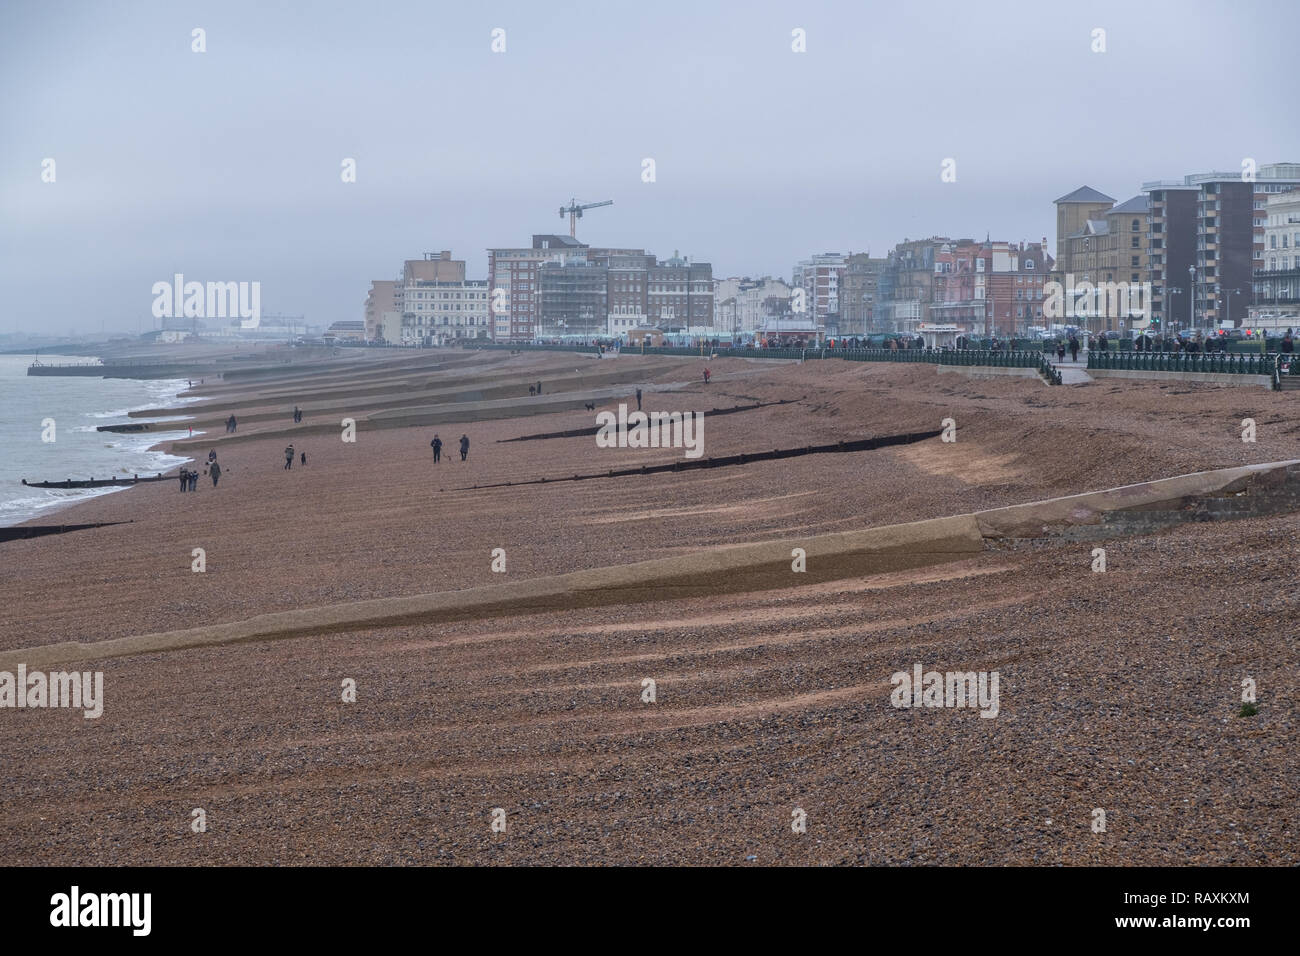 Panoramablick auf den Strand von Brighton, East Sussex, UK. An einem kalten, bewölkt, Tag Misty's Winter fotografiert. Stockfoto